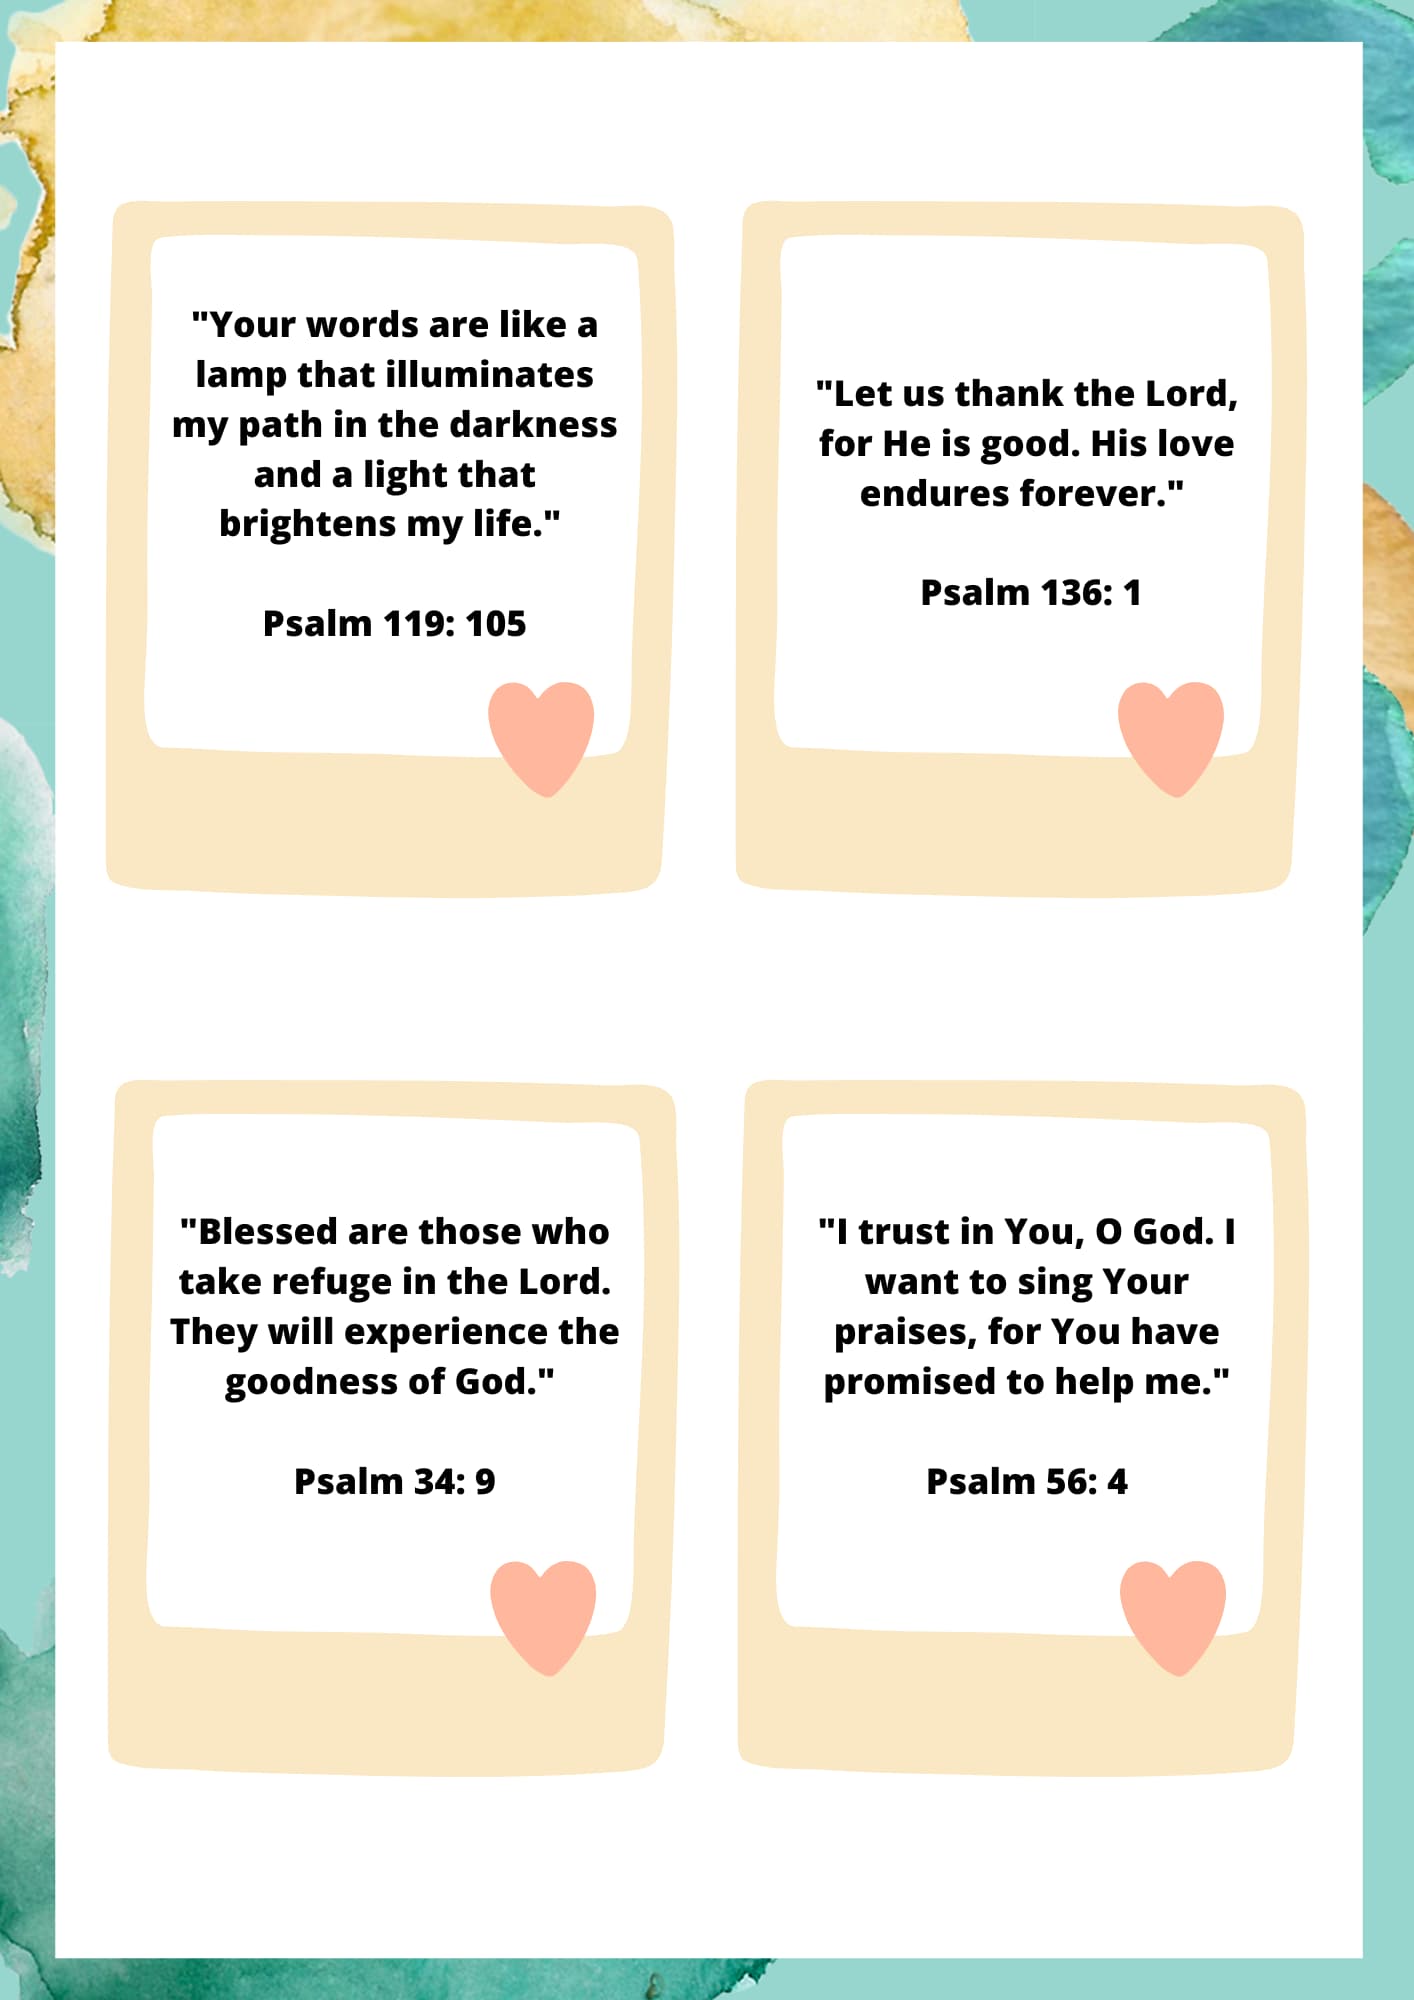 Twenty encouraging Bible verses for children